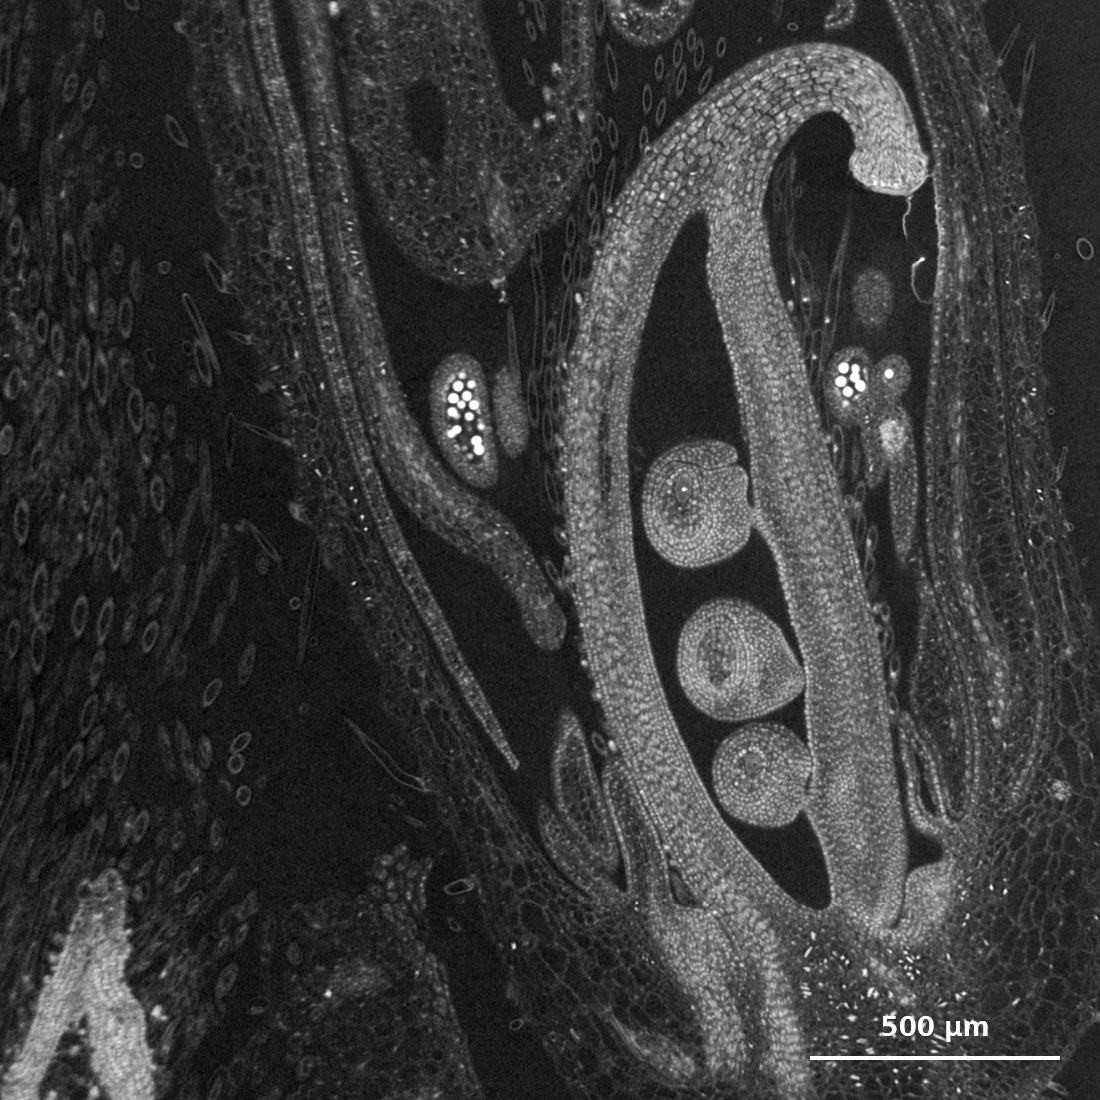 Complejo floral en desarrollo de soja, captado con el microscopio de rayos X ZEISS Xradia Versa, se ve el ovario con los óvulos en desarrollo rodeados por las anteras que contienen brillantes granos de polen.